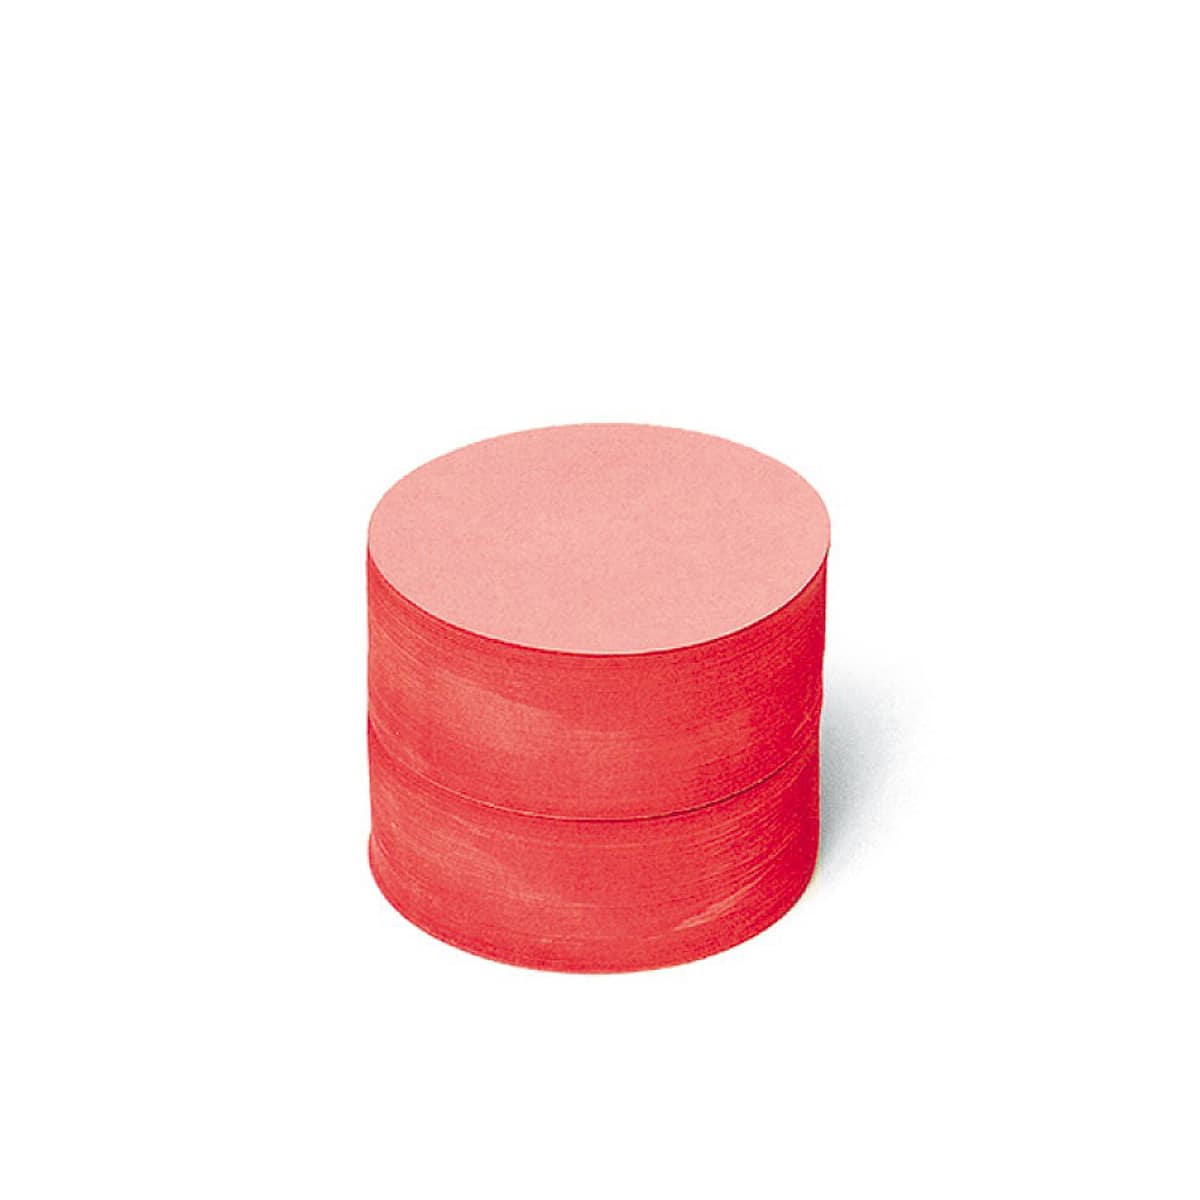 Kleine runde Scheiben, Pin-It, 500 Stück, uni- 2 rot